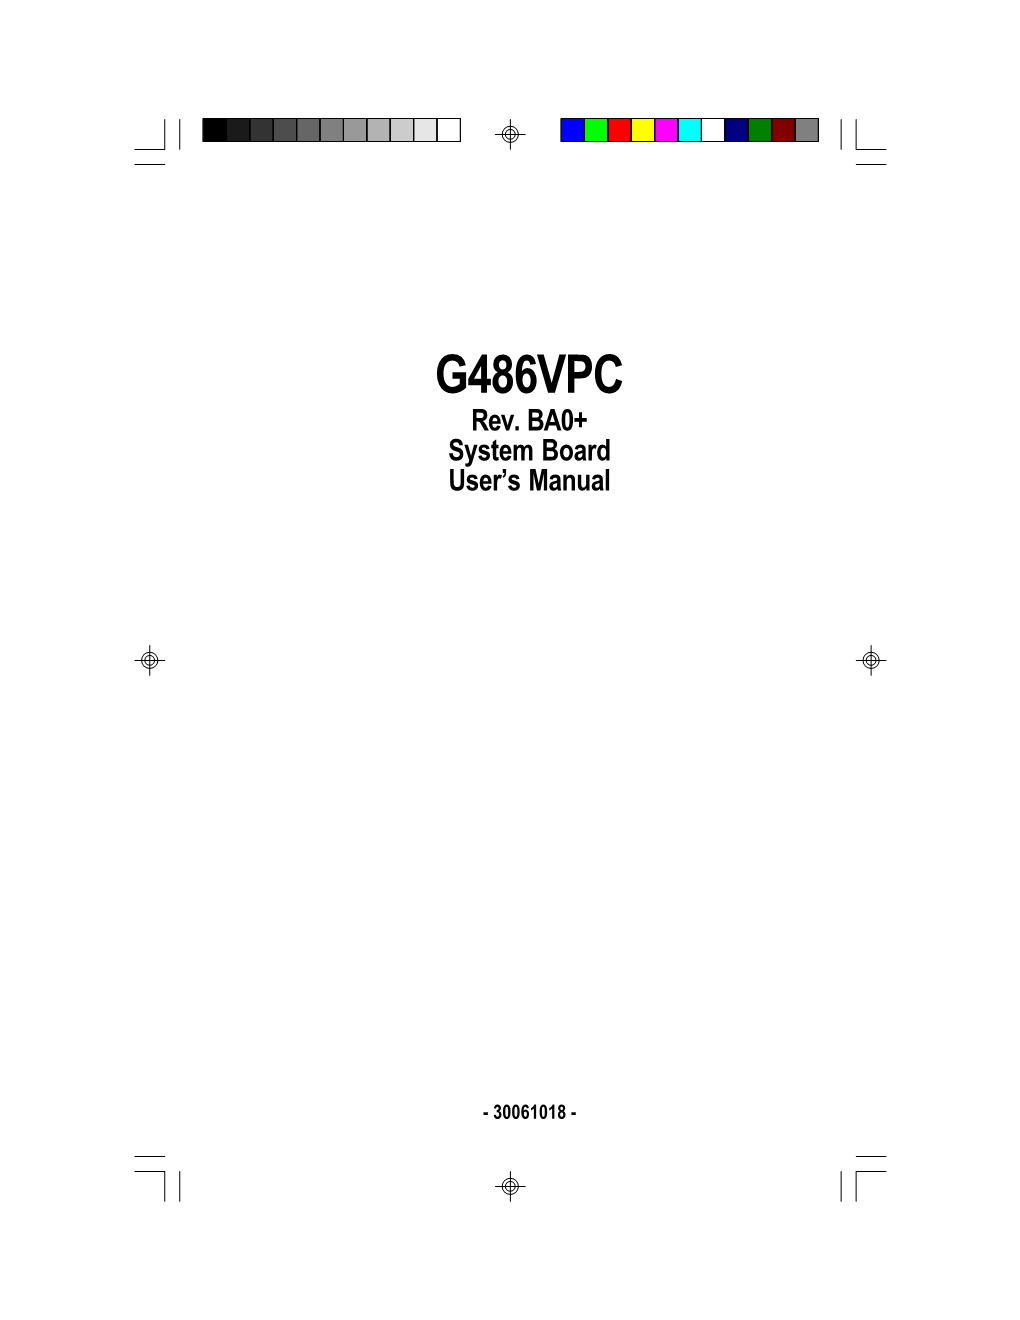 G486VPC Revision BA0+